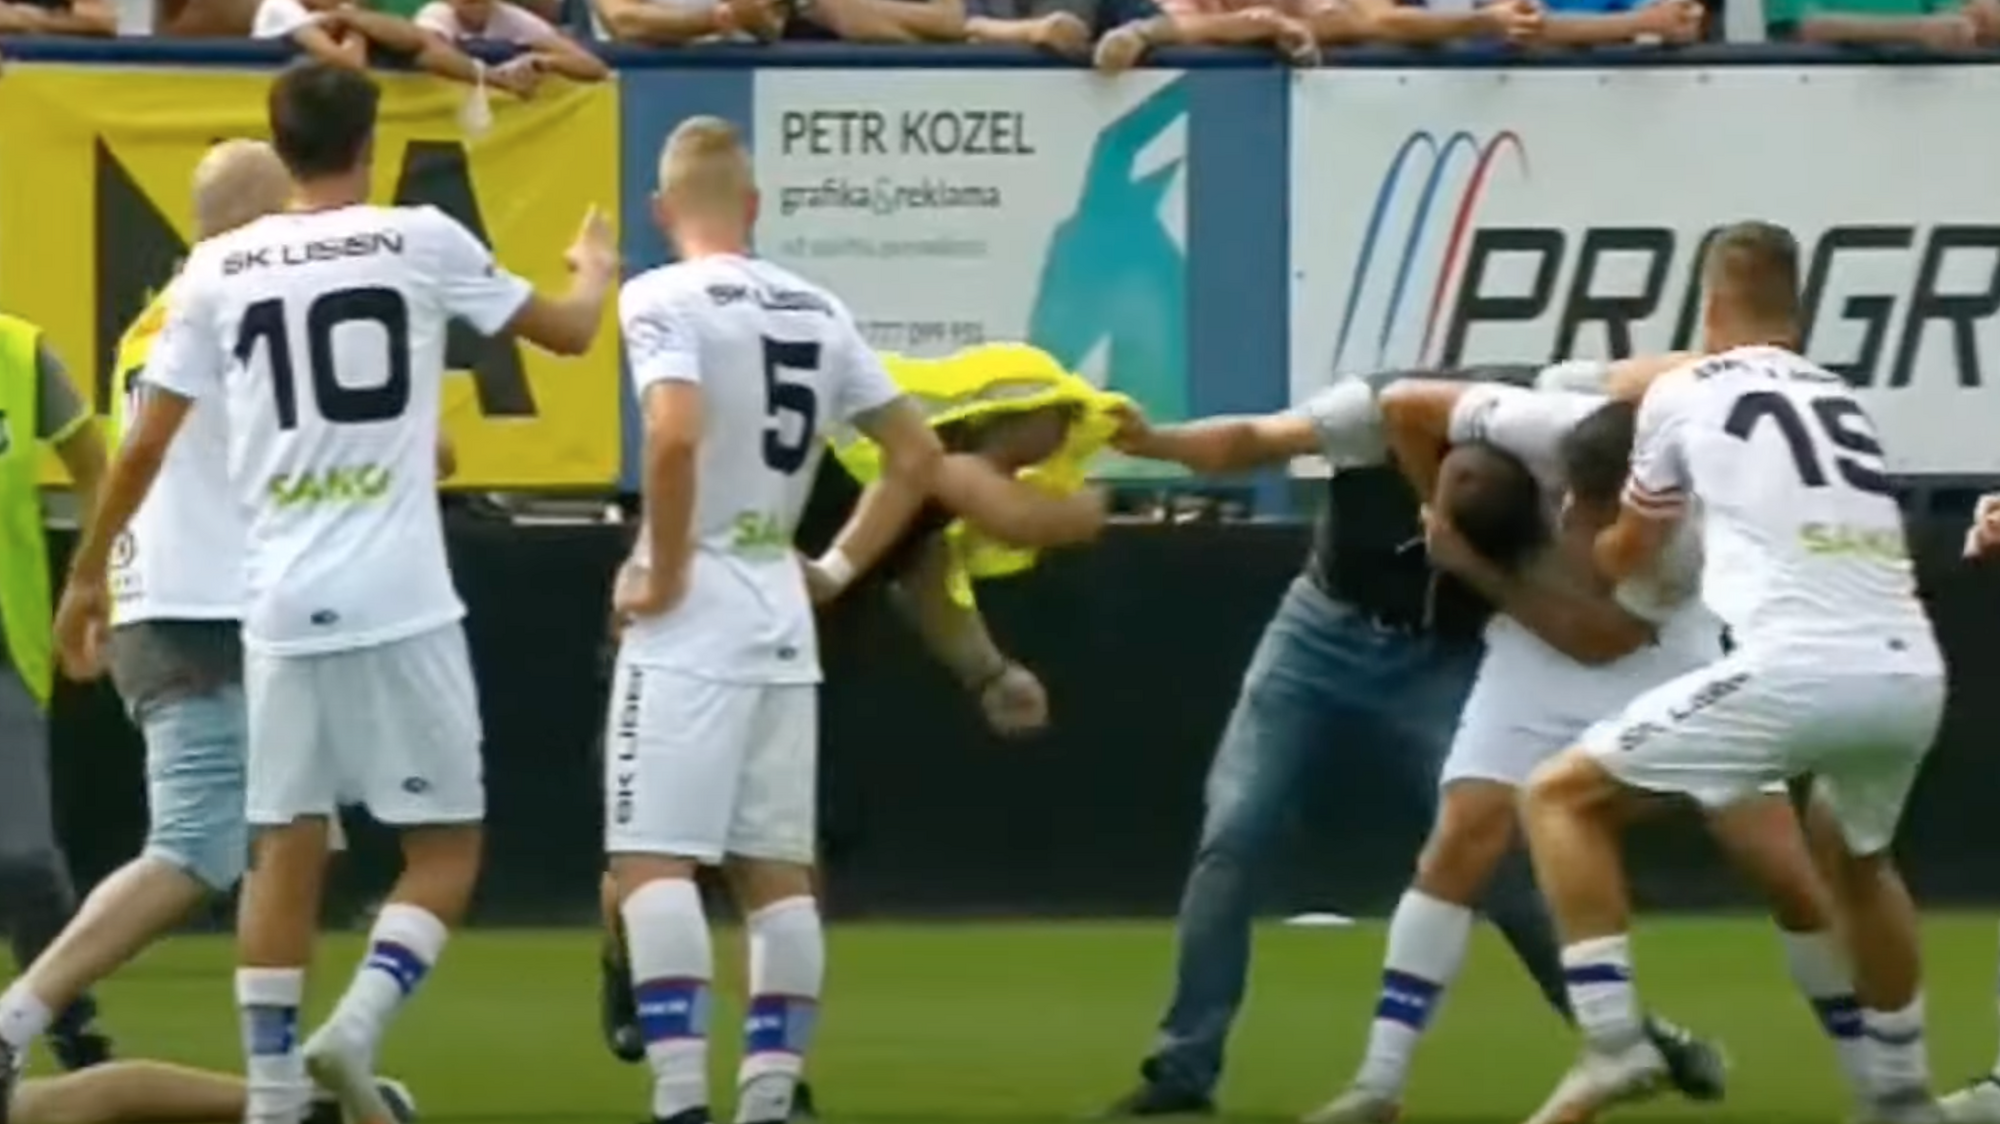 VIDEO: Divoké derby v Brne. Fanúšikovia vtrhli na ihrisko, do potýčky sa  zapojil aj hráč